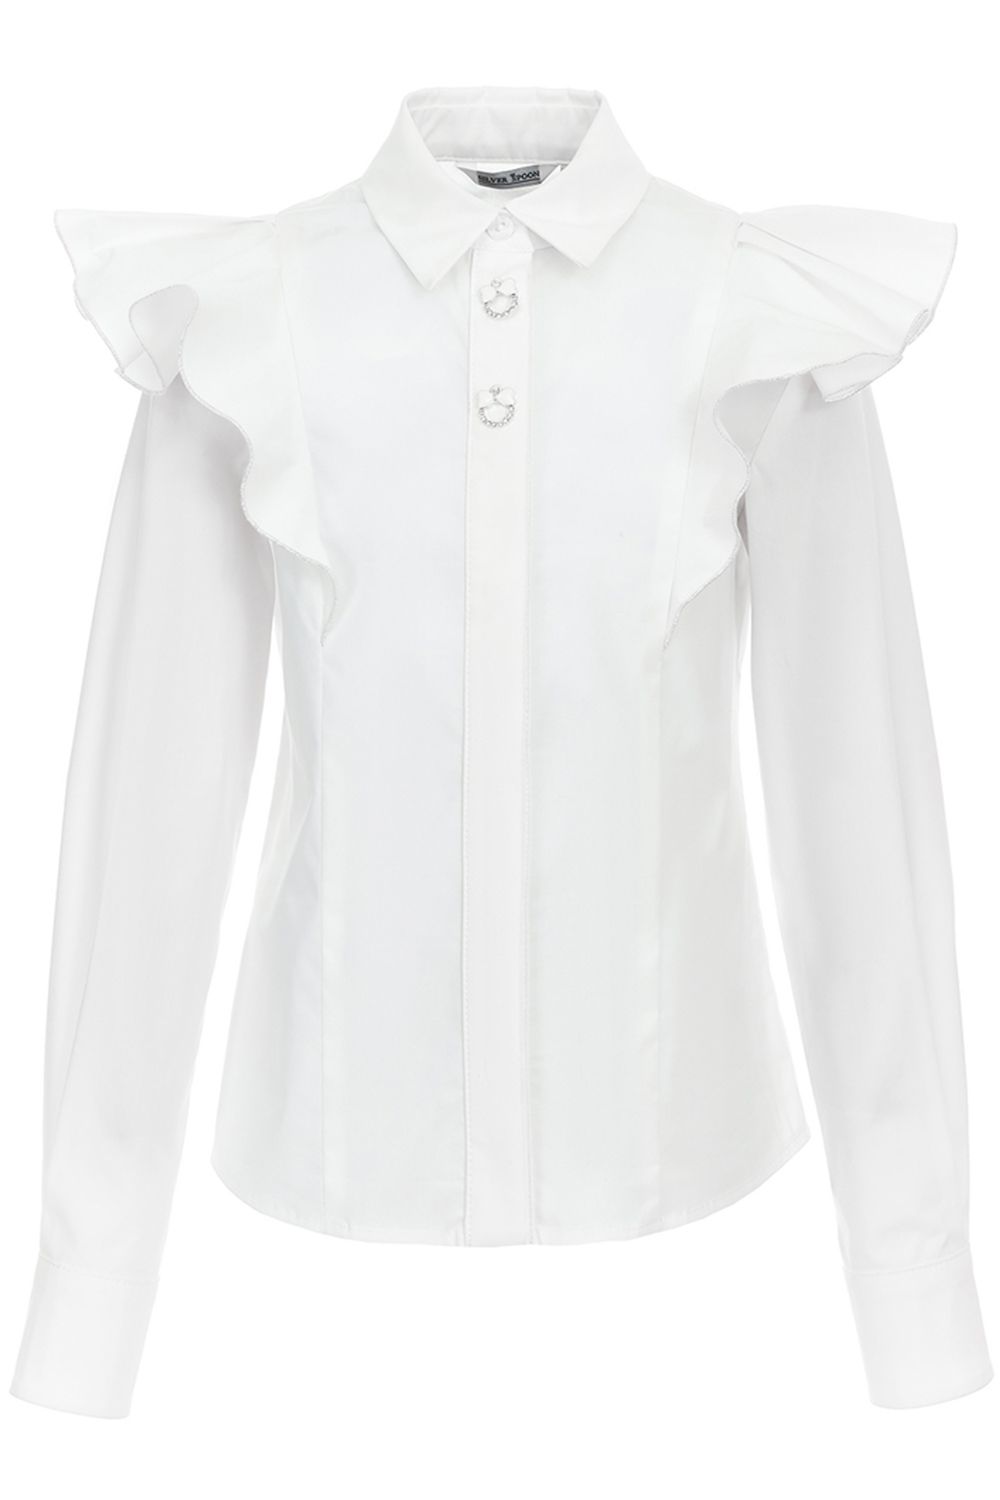 Блуза Silver Spoon, размер 122, цвет белый SSFSG-829-23012-200 - фото 1